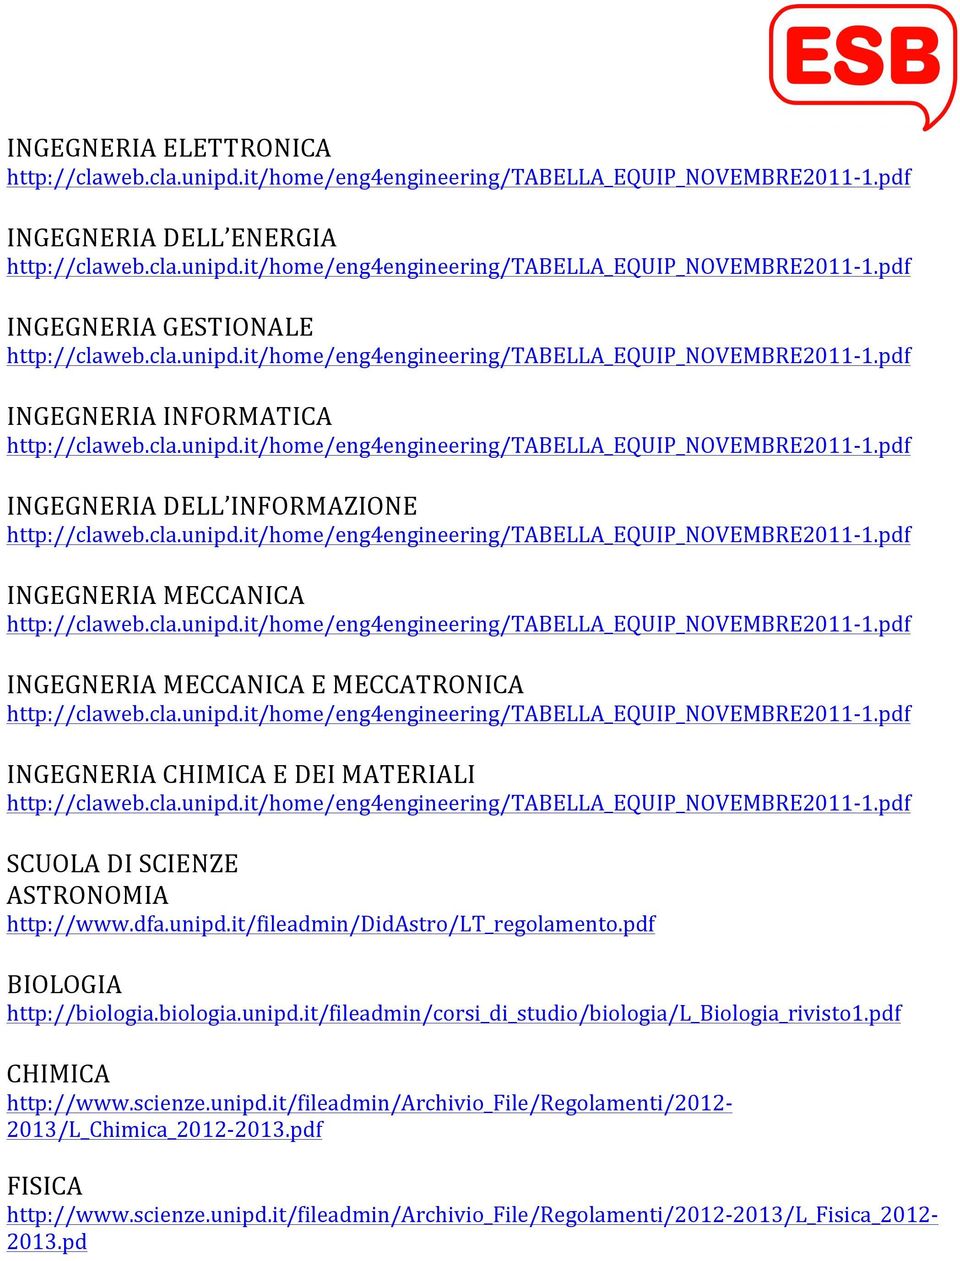 pdf BIOLOGIA http://biologia.biologia.unipd.it/fileadmin/corsi_di_studio/biologia/l_biologia_rivisto1.pdf CHIMICA http://www.scienze.unipd.it/fileadmin/archivio_file/regolamenti/2012-2013/l_chimica_2012-2013.